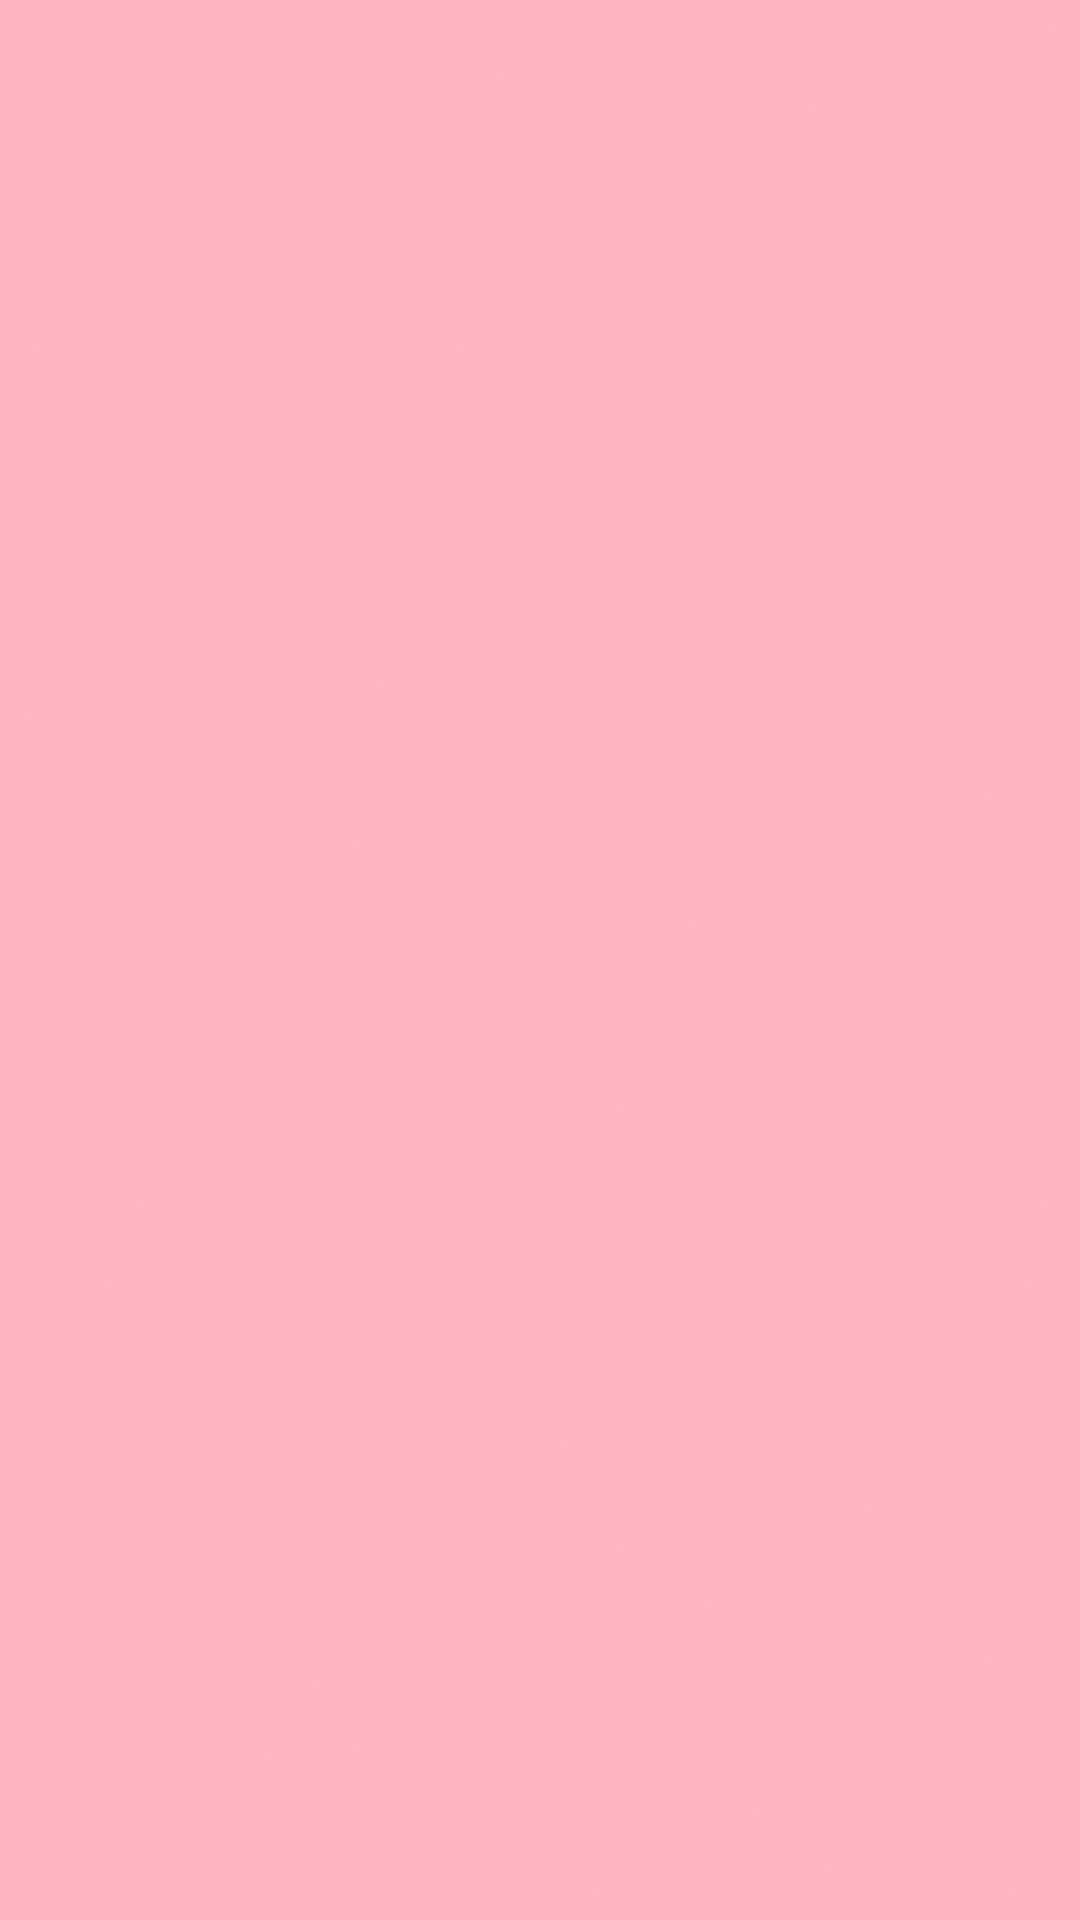 Soft Pink 1080 X 1920 Wallpaper